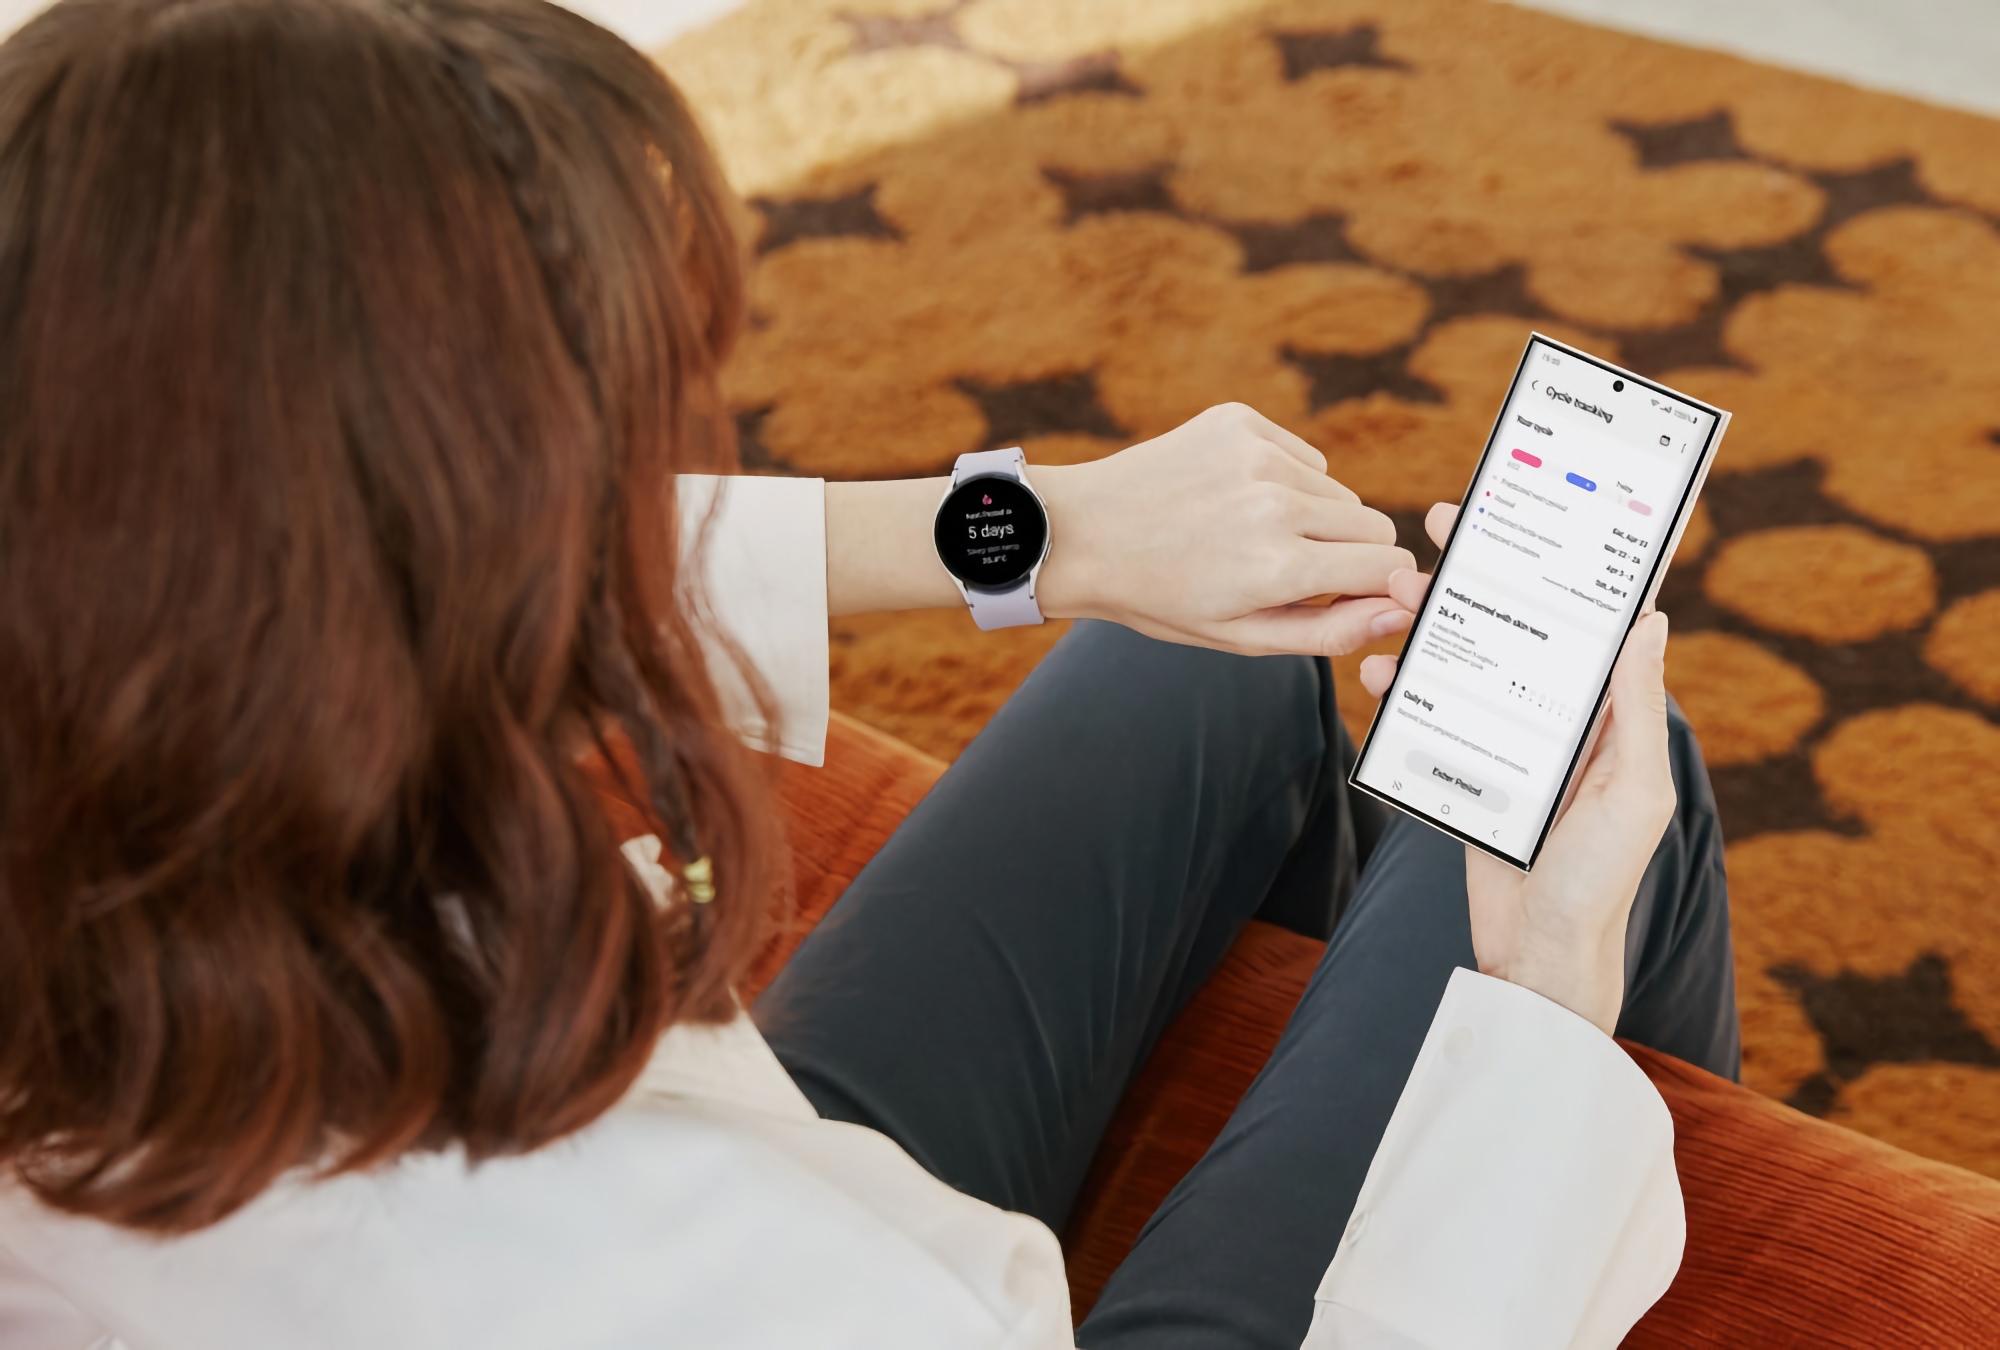 Samsung ha attivato un sensore di temperatura corporea nei Galaxy Watch 5 e Galaxy Watch 5 Pro per tracciare i cicli di vita